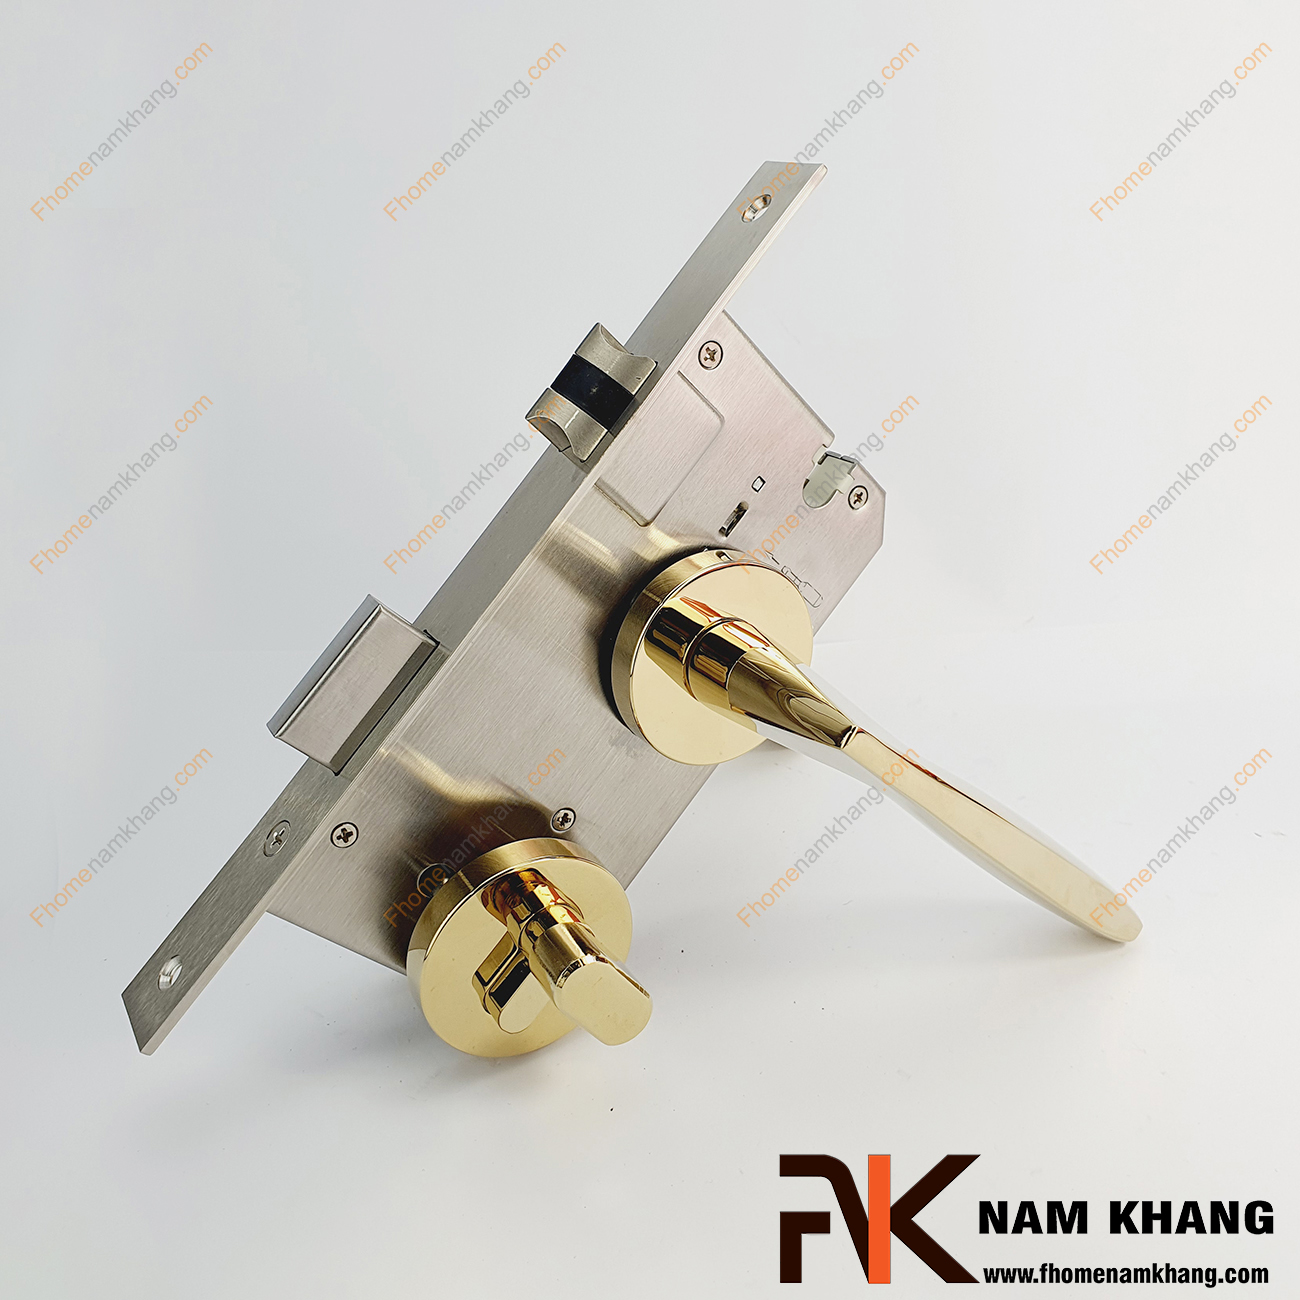 Khóa cửa phân thể dạng trơn màu vàng bóng NK576-PVD được sản xuất từ hợp kim cao cấp, gồm 1 đầu chìa 1 đầu vặn chuyên dùng cho cửa phòng.